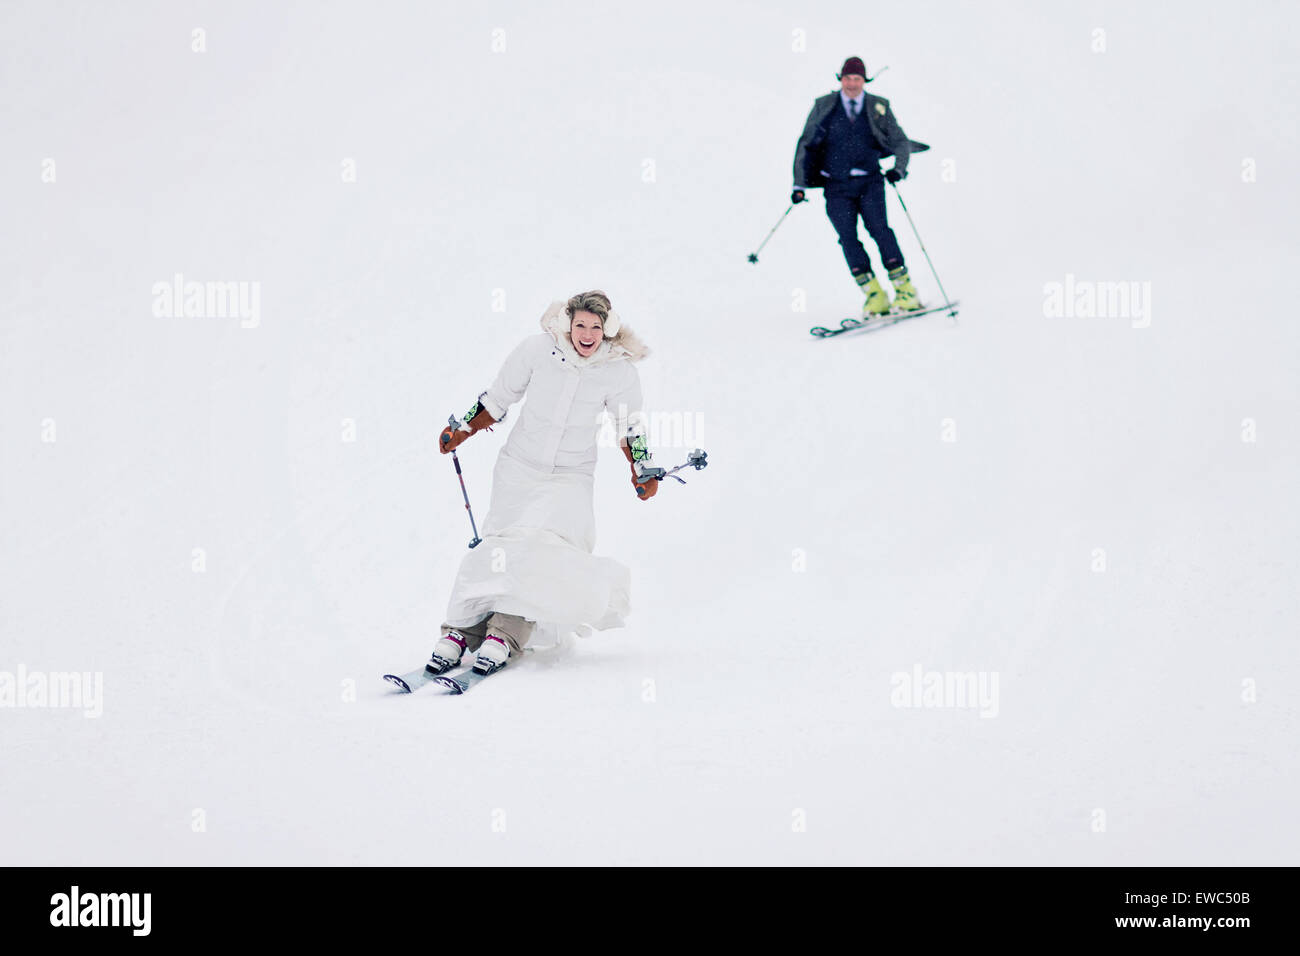 Una pareja de recién casados juntos esquí montaña abajo después de casarse. Foto de stock